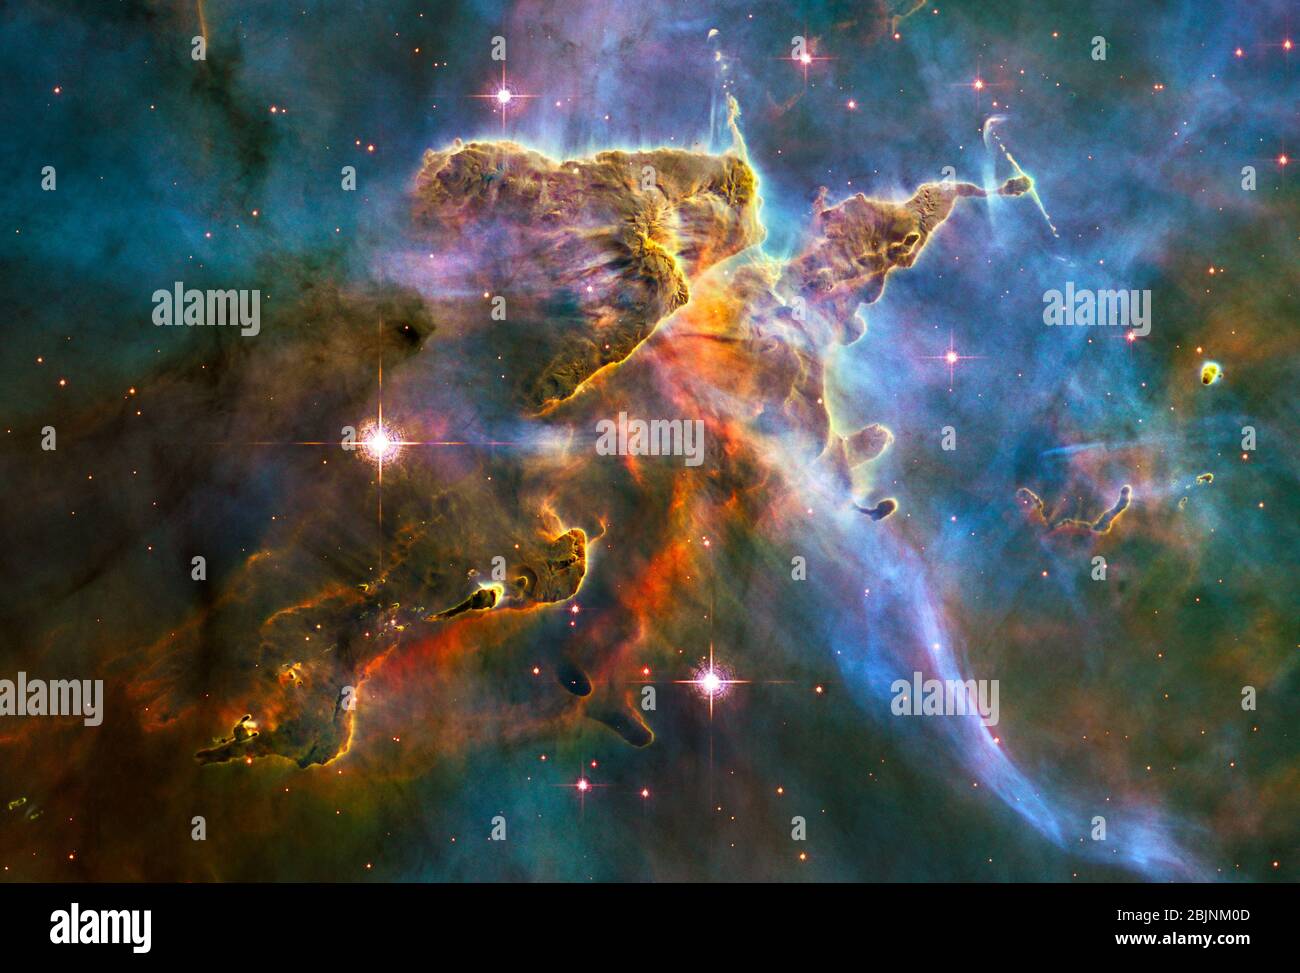 Das NASA-Weltraumteleskop Hubble hat diese wogende Wolke aus kaltem interstellaren Gas und Staub, die aus einer stürmischen Sternschule im aufsteigt, erfasst Stockfoto